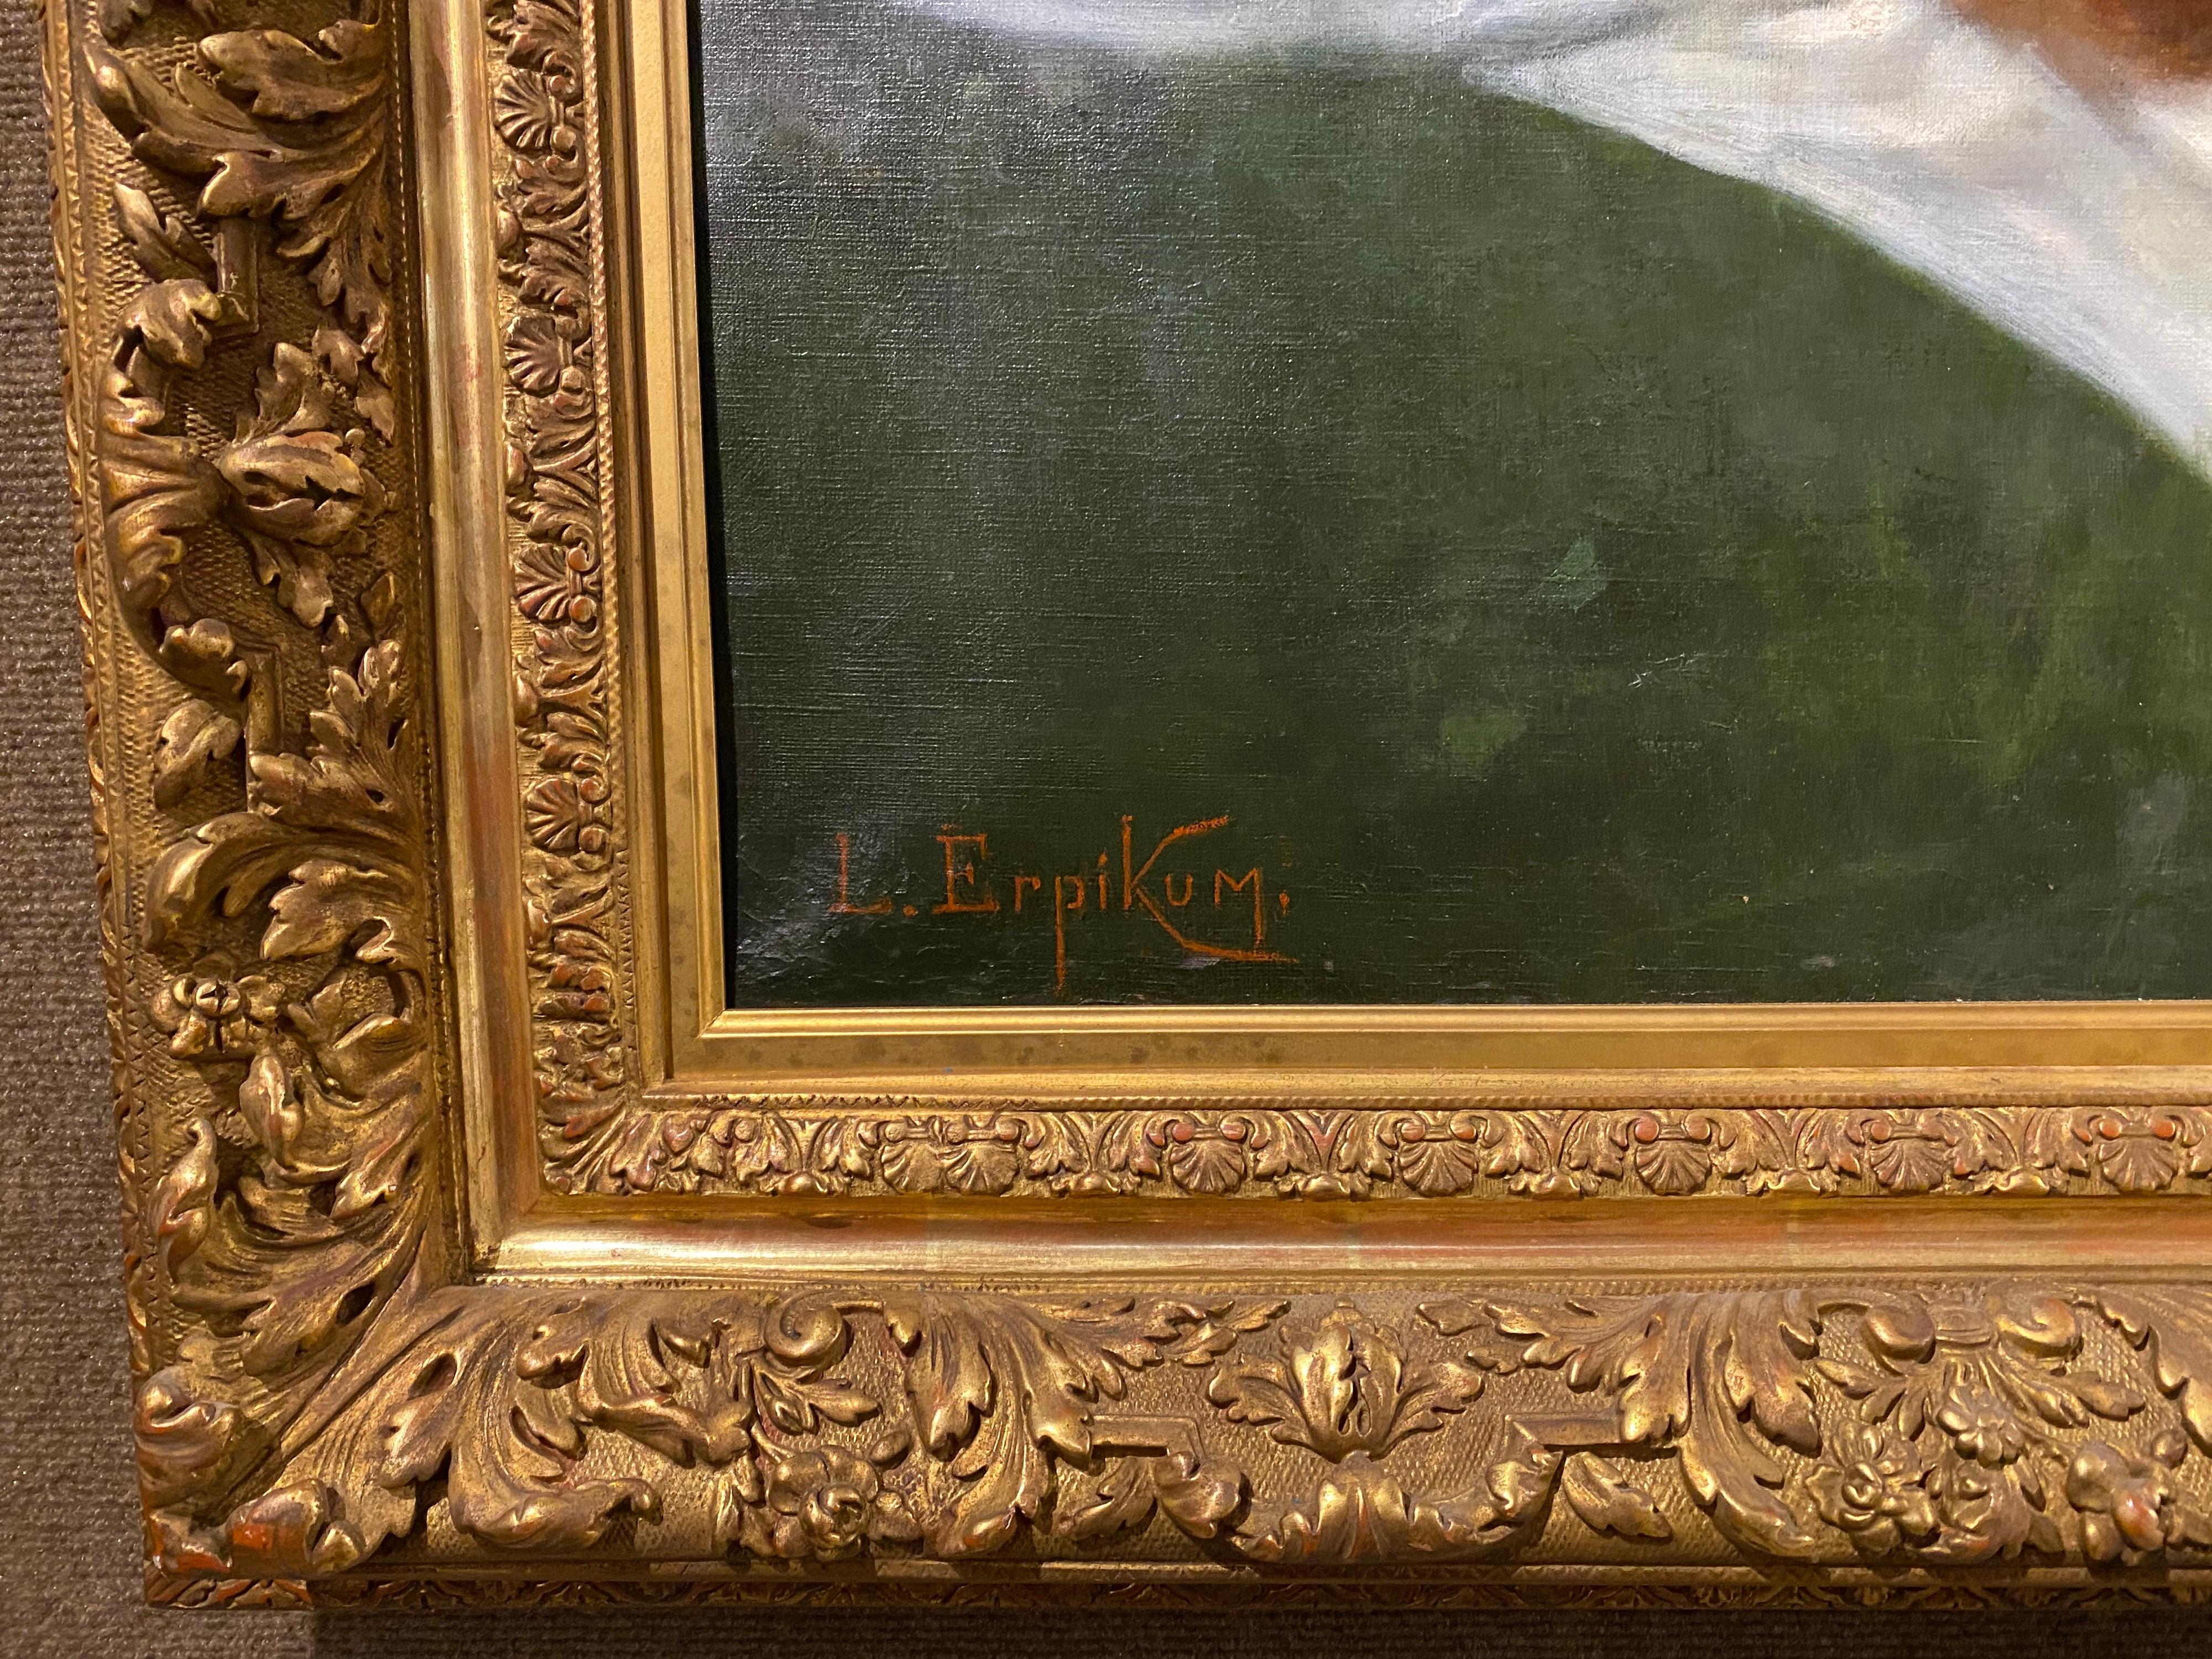 Gran desnudo francés al óleo sobre lienzo del siglo XIX, obra de Leon Erpikum, en un pesado marco de madera dorada tallada. Firmado en la parte inferior izquierda L. Erpikum y fechado en 1889 en la parte inferior derecha, finamente pintado de un